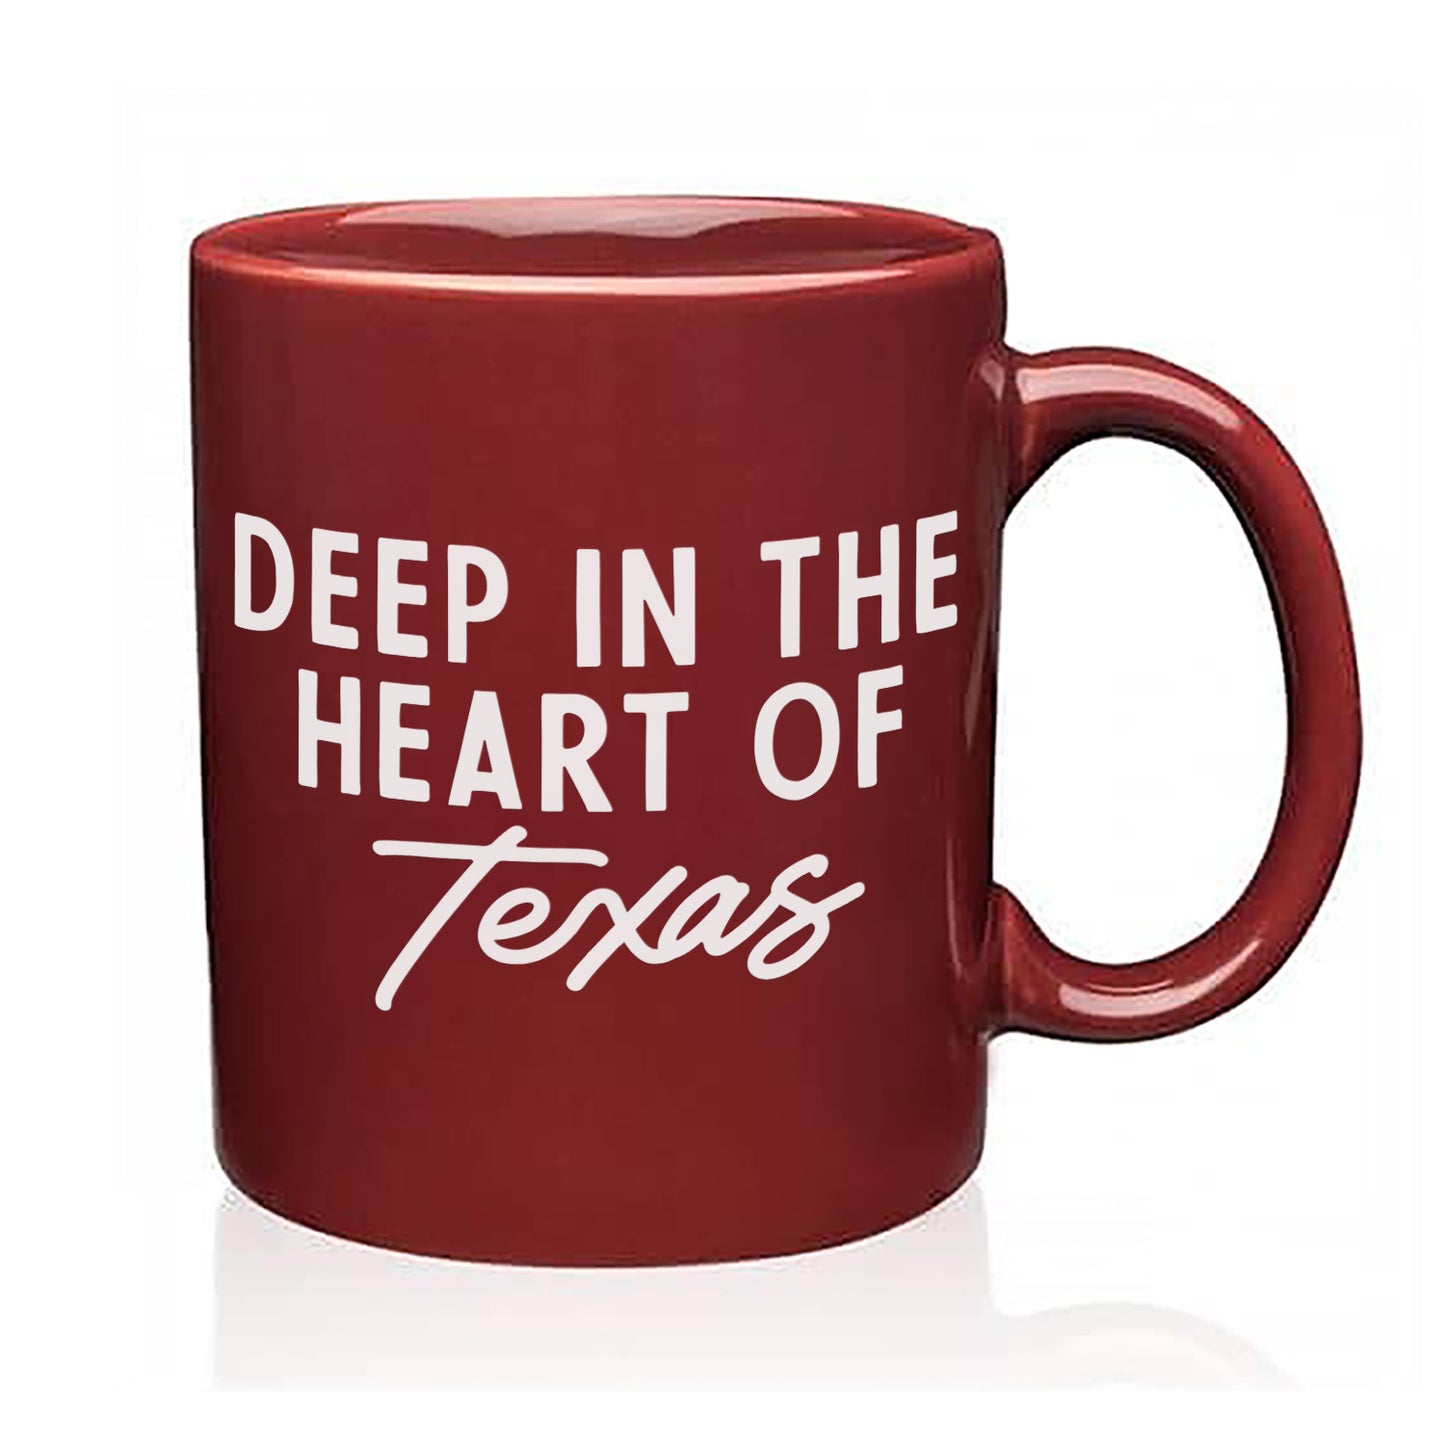 Deep in the Heart of Texas Coffee Mug